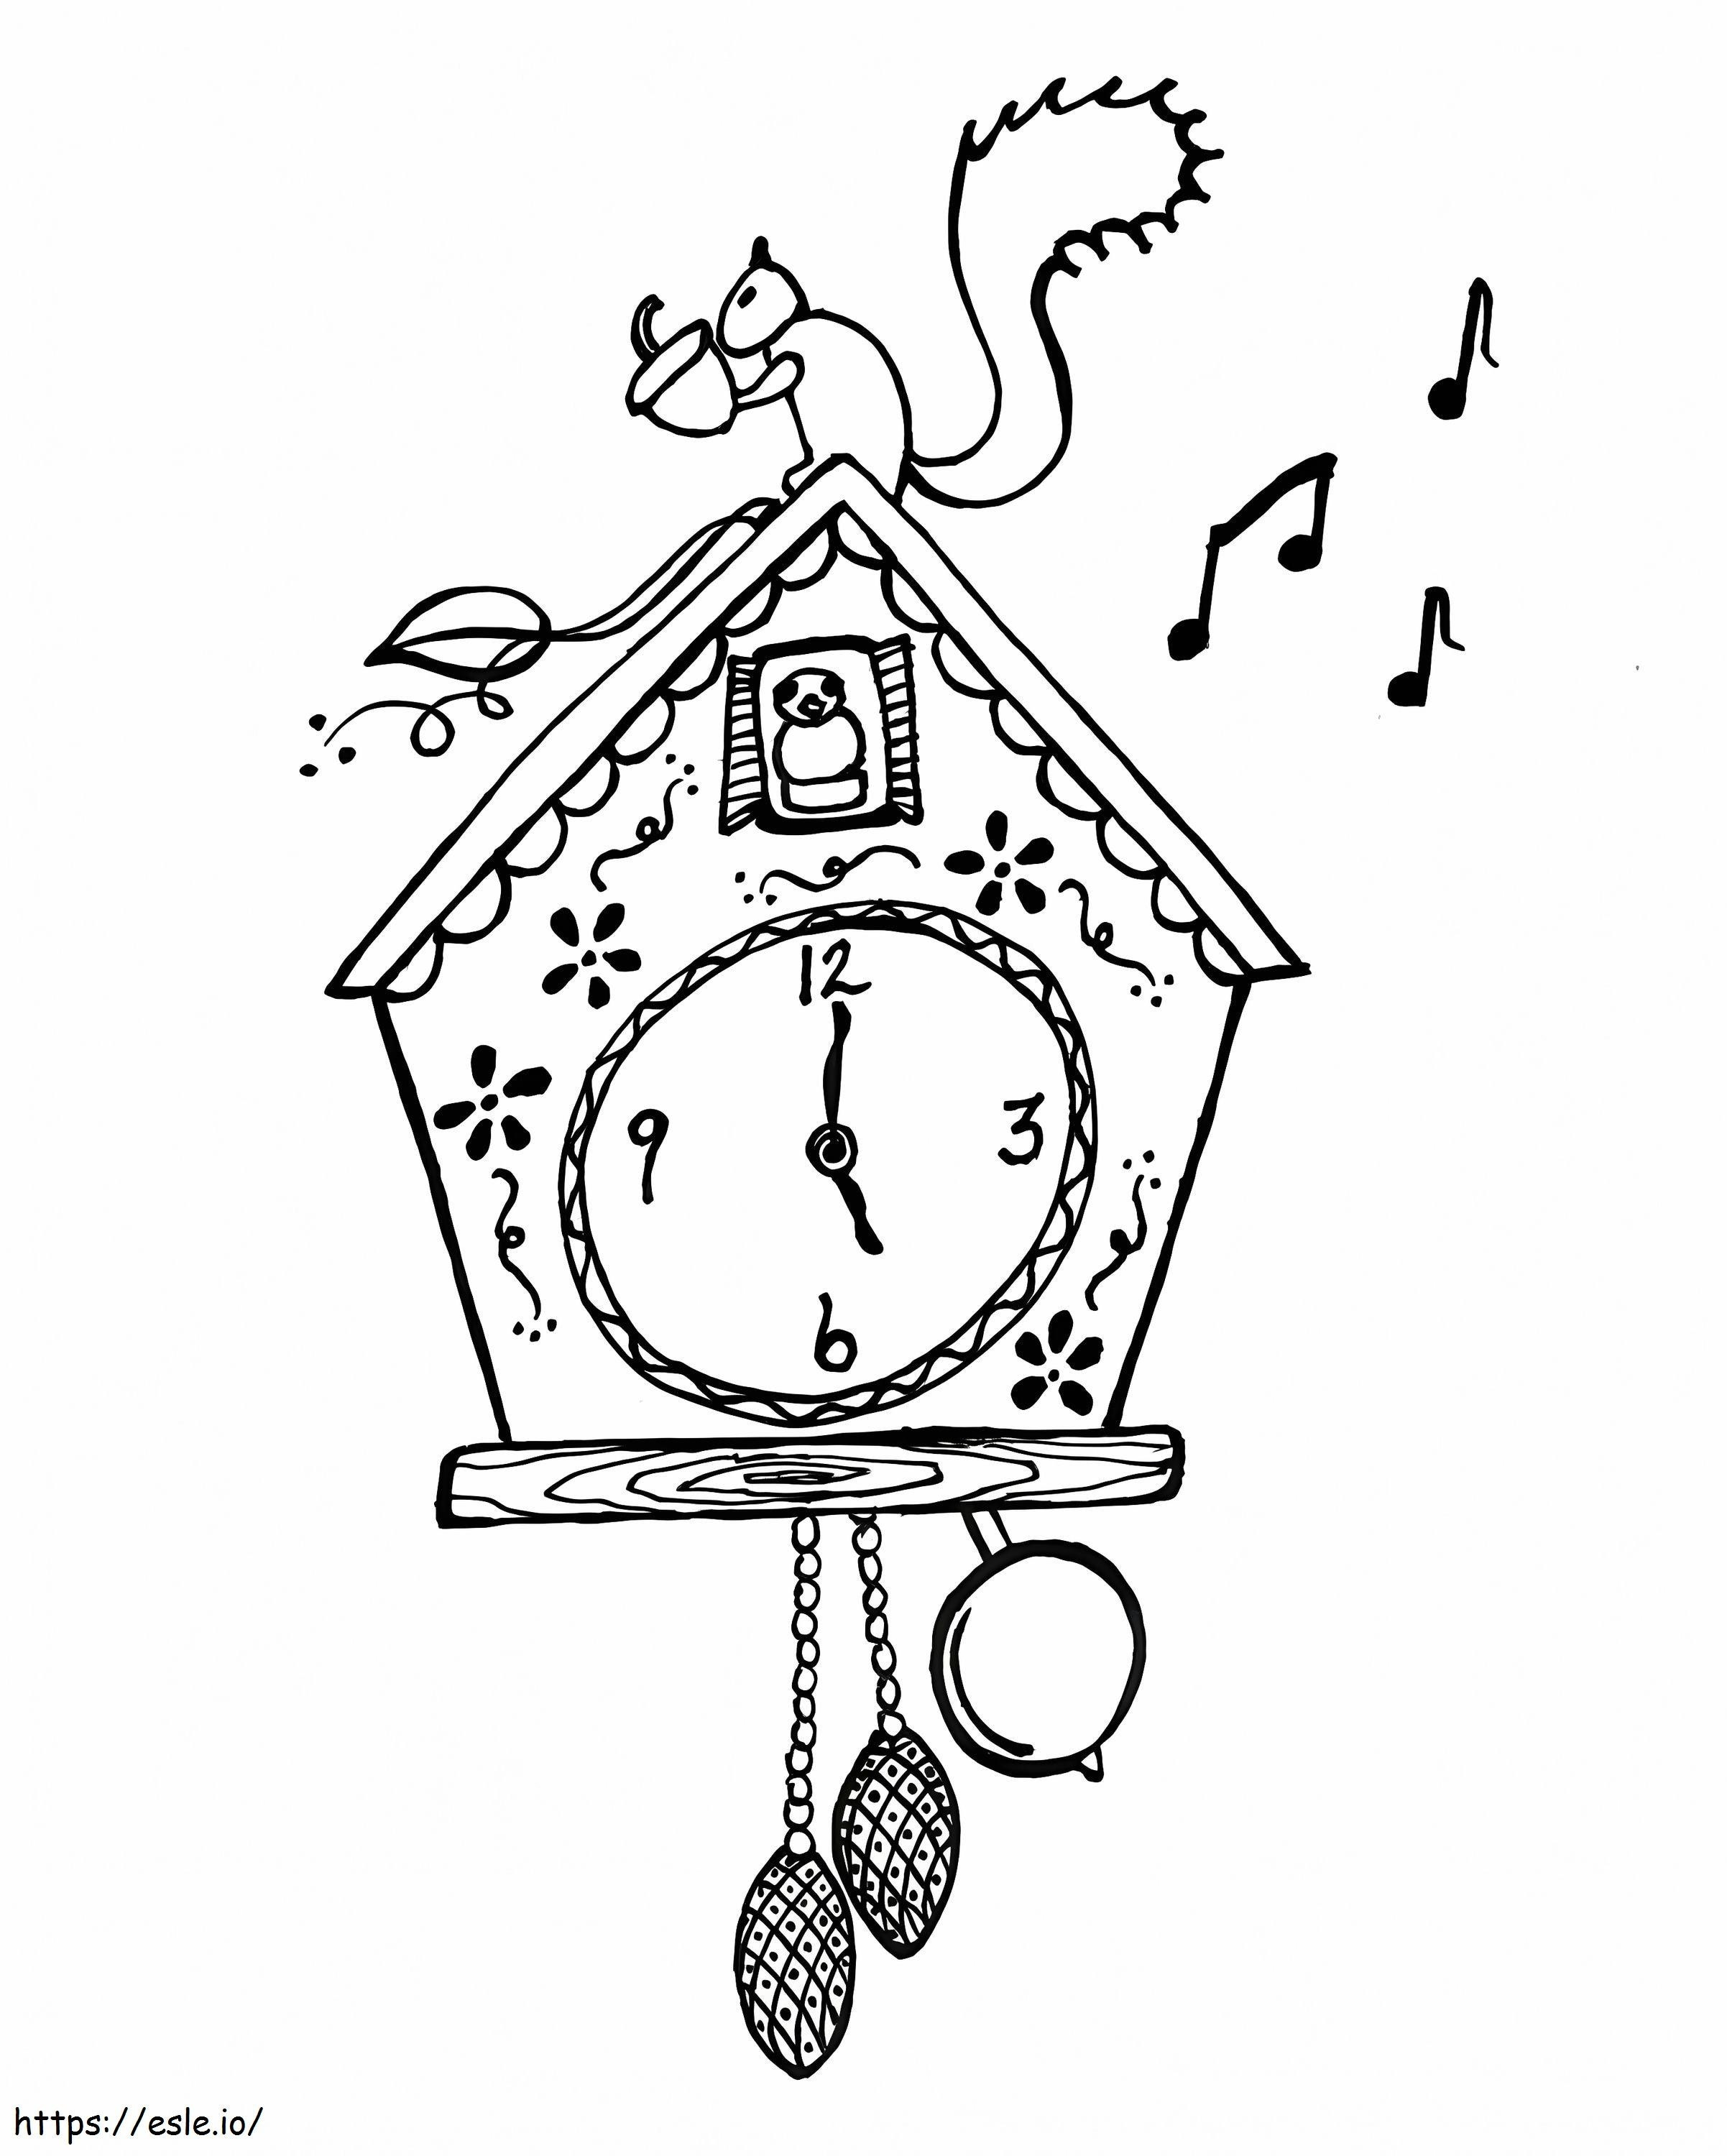 Coloriage Écureuil sur l'horloge à imprimer dessin